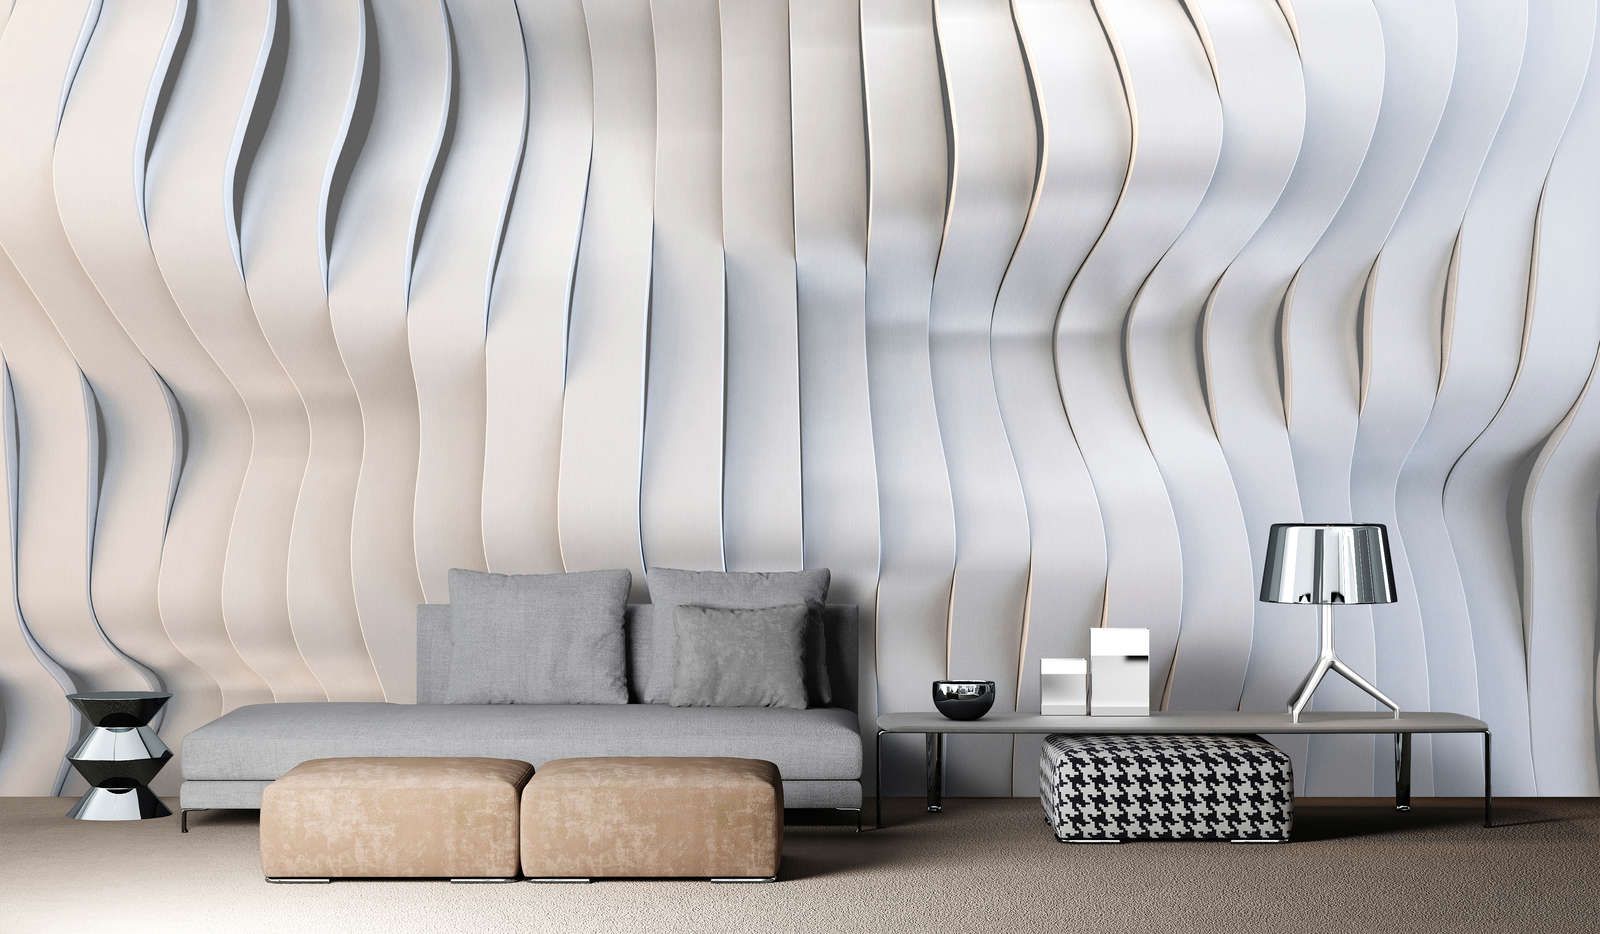             solaris 1 - Photo wallpaper in futuristic streamline design - Lightly textured non-woven fabric
        